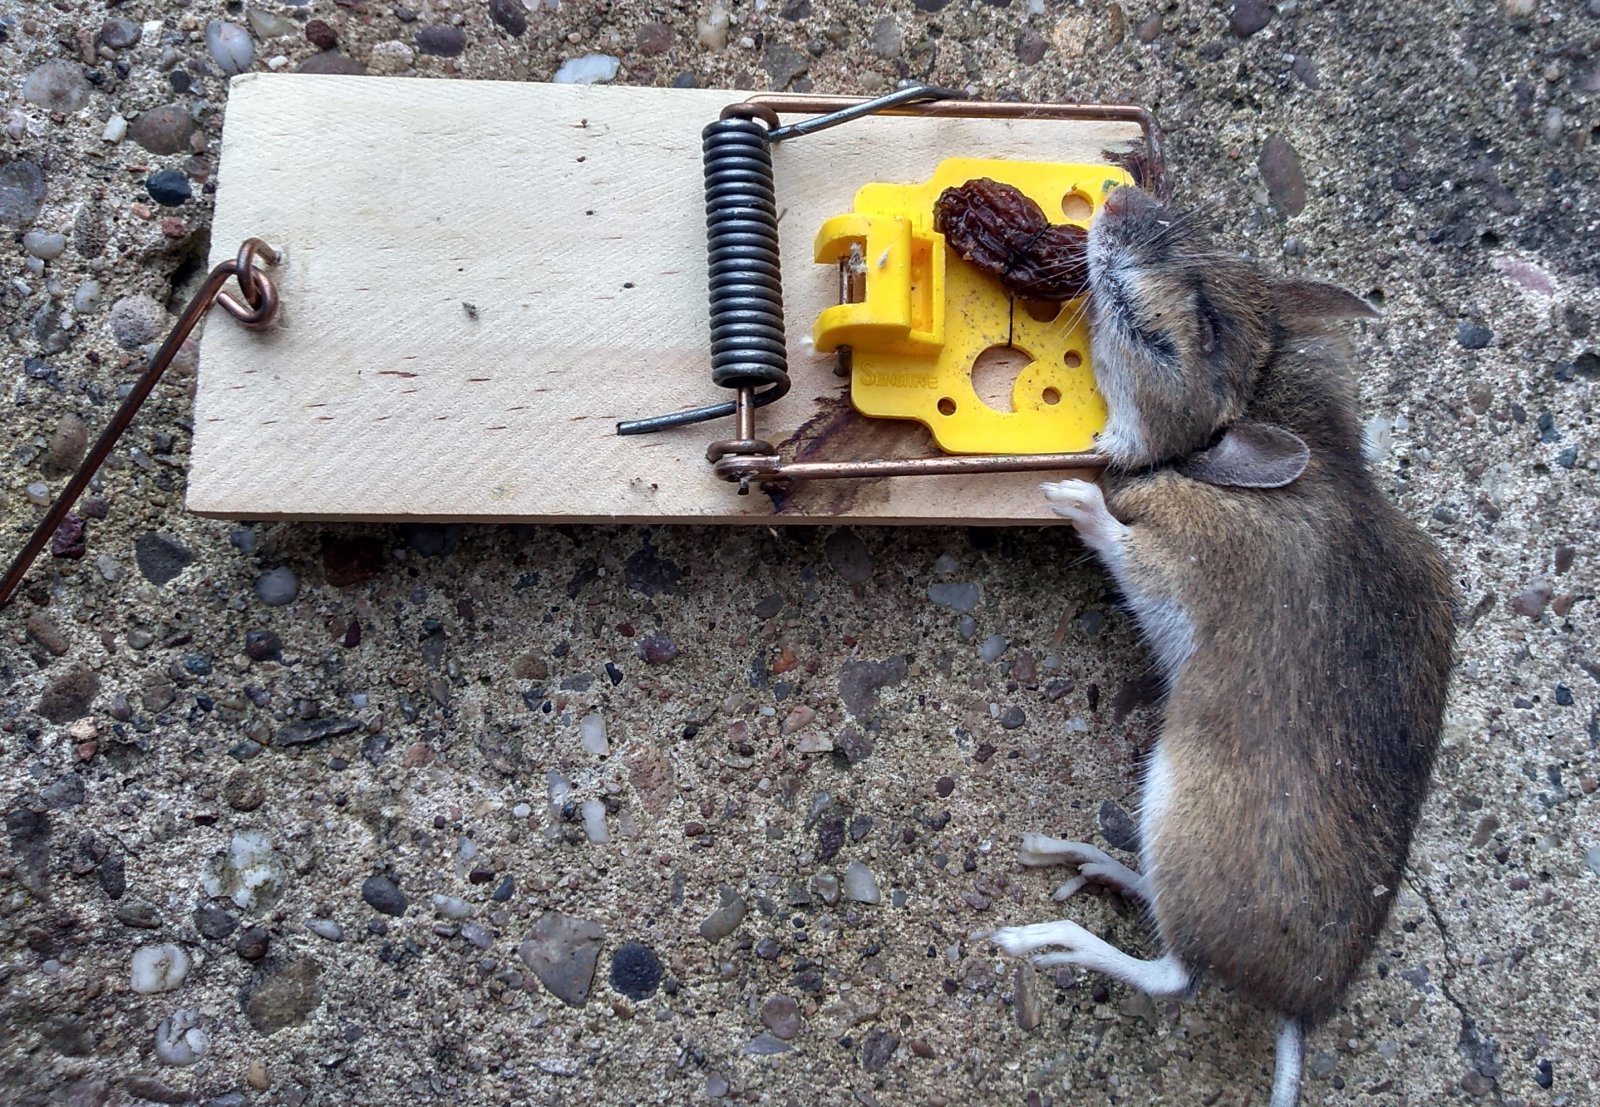 Building a better mousetrap